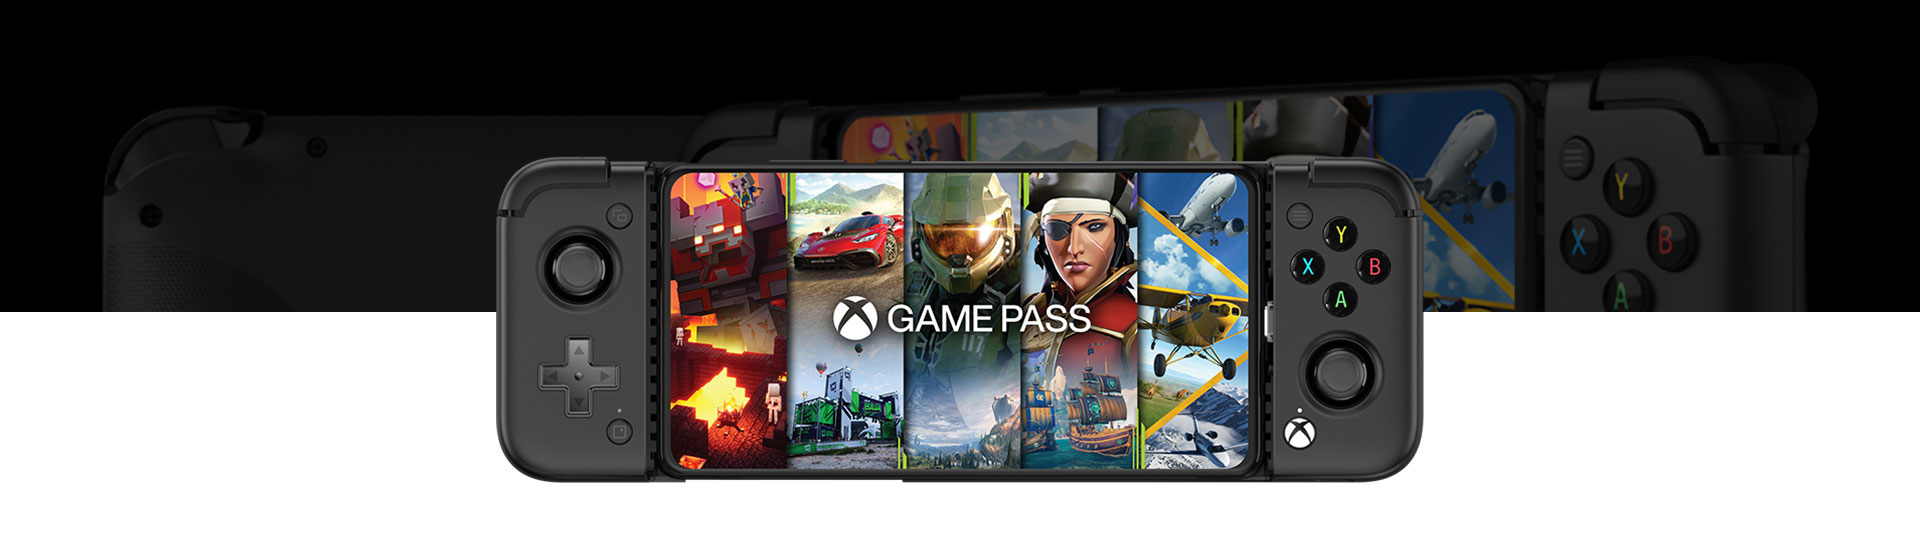 Vooraanzicht van de GameSir X2 Pro mobiele gaming controller met Game Pass-schermvulling